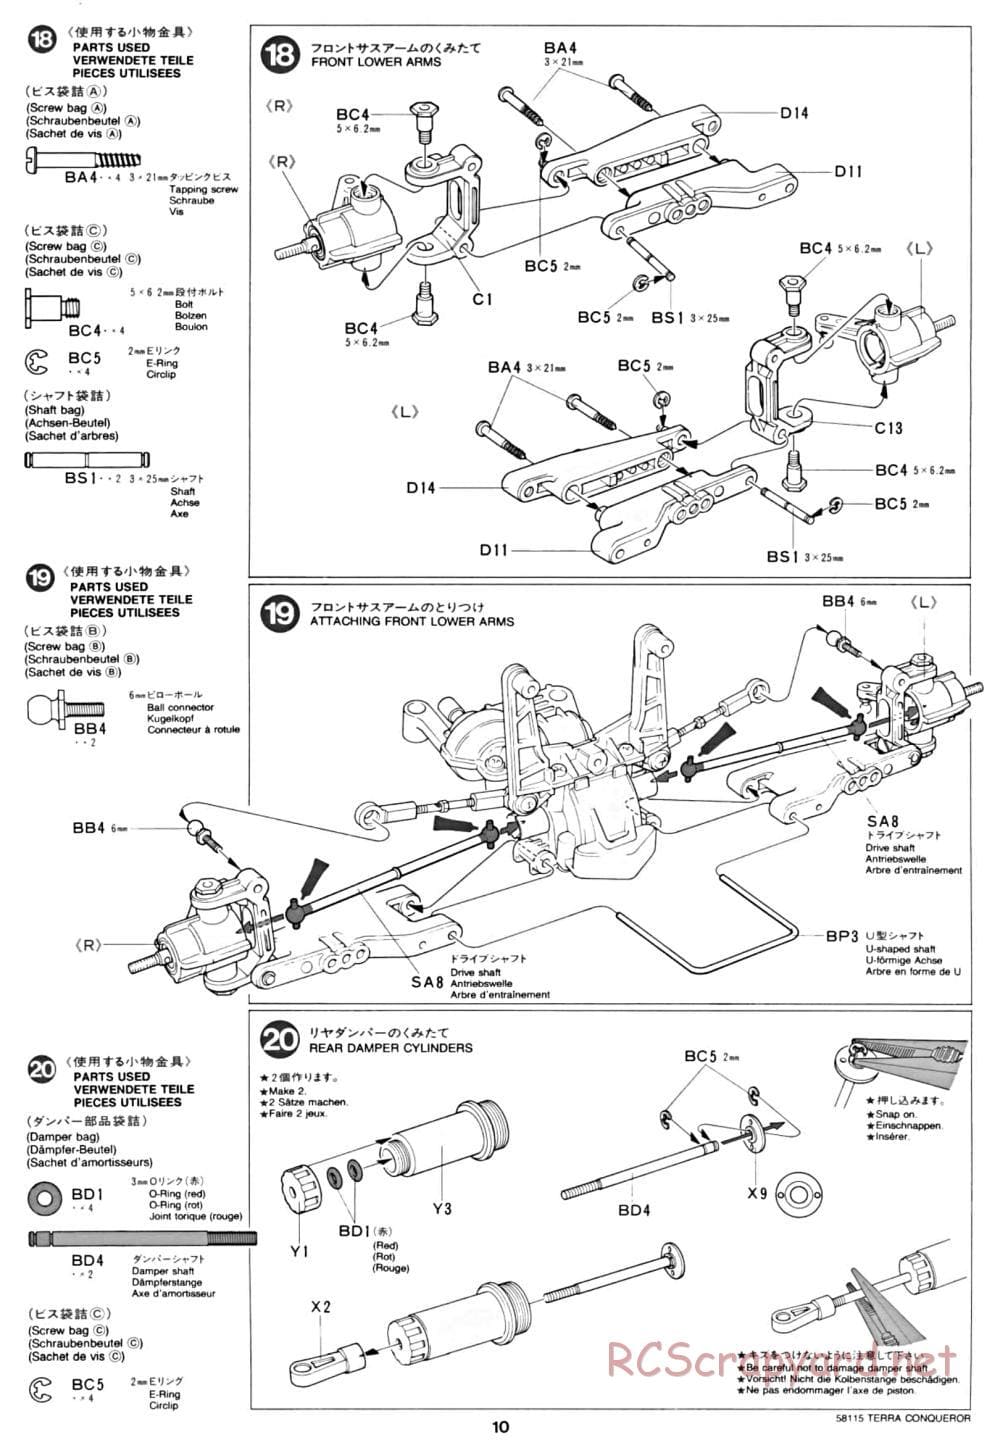 Tamiya - Terra Conqueror Chassis - Manual - Page 10